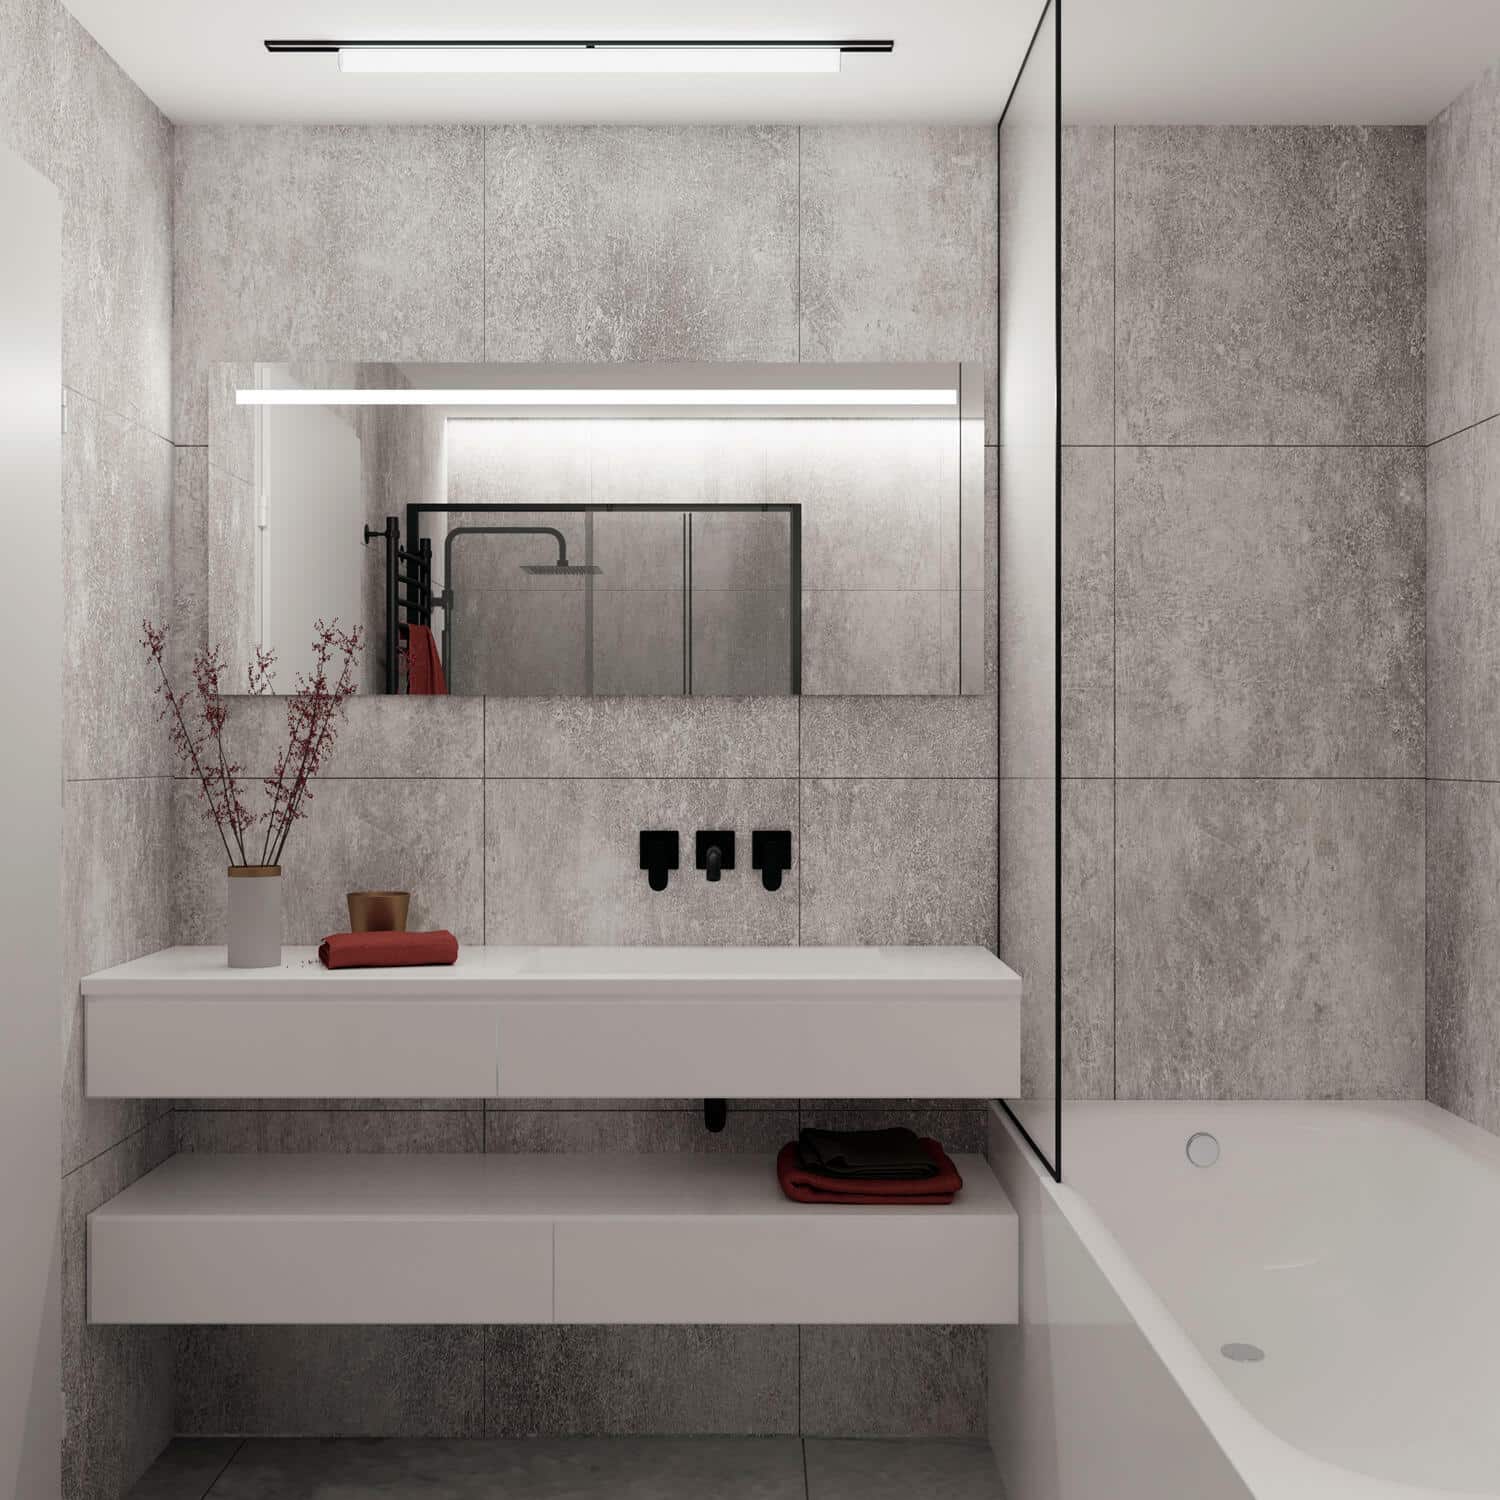 Deze design badkamer spiegel is 140 cm breed, 60 cm hoog en slechts 3 cm diep